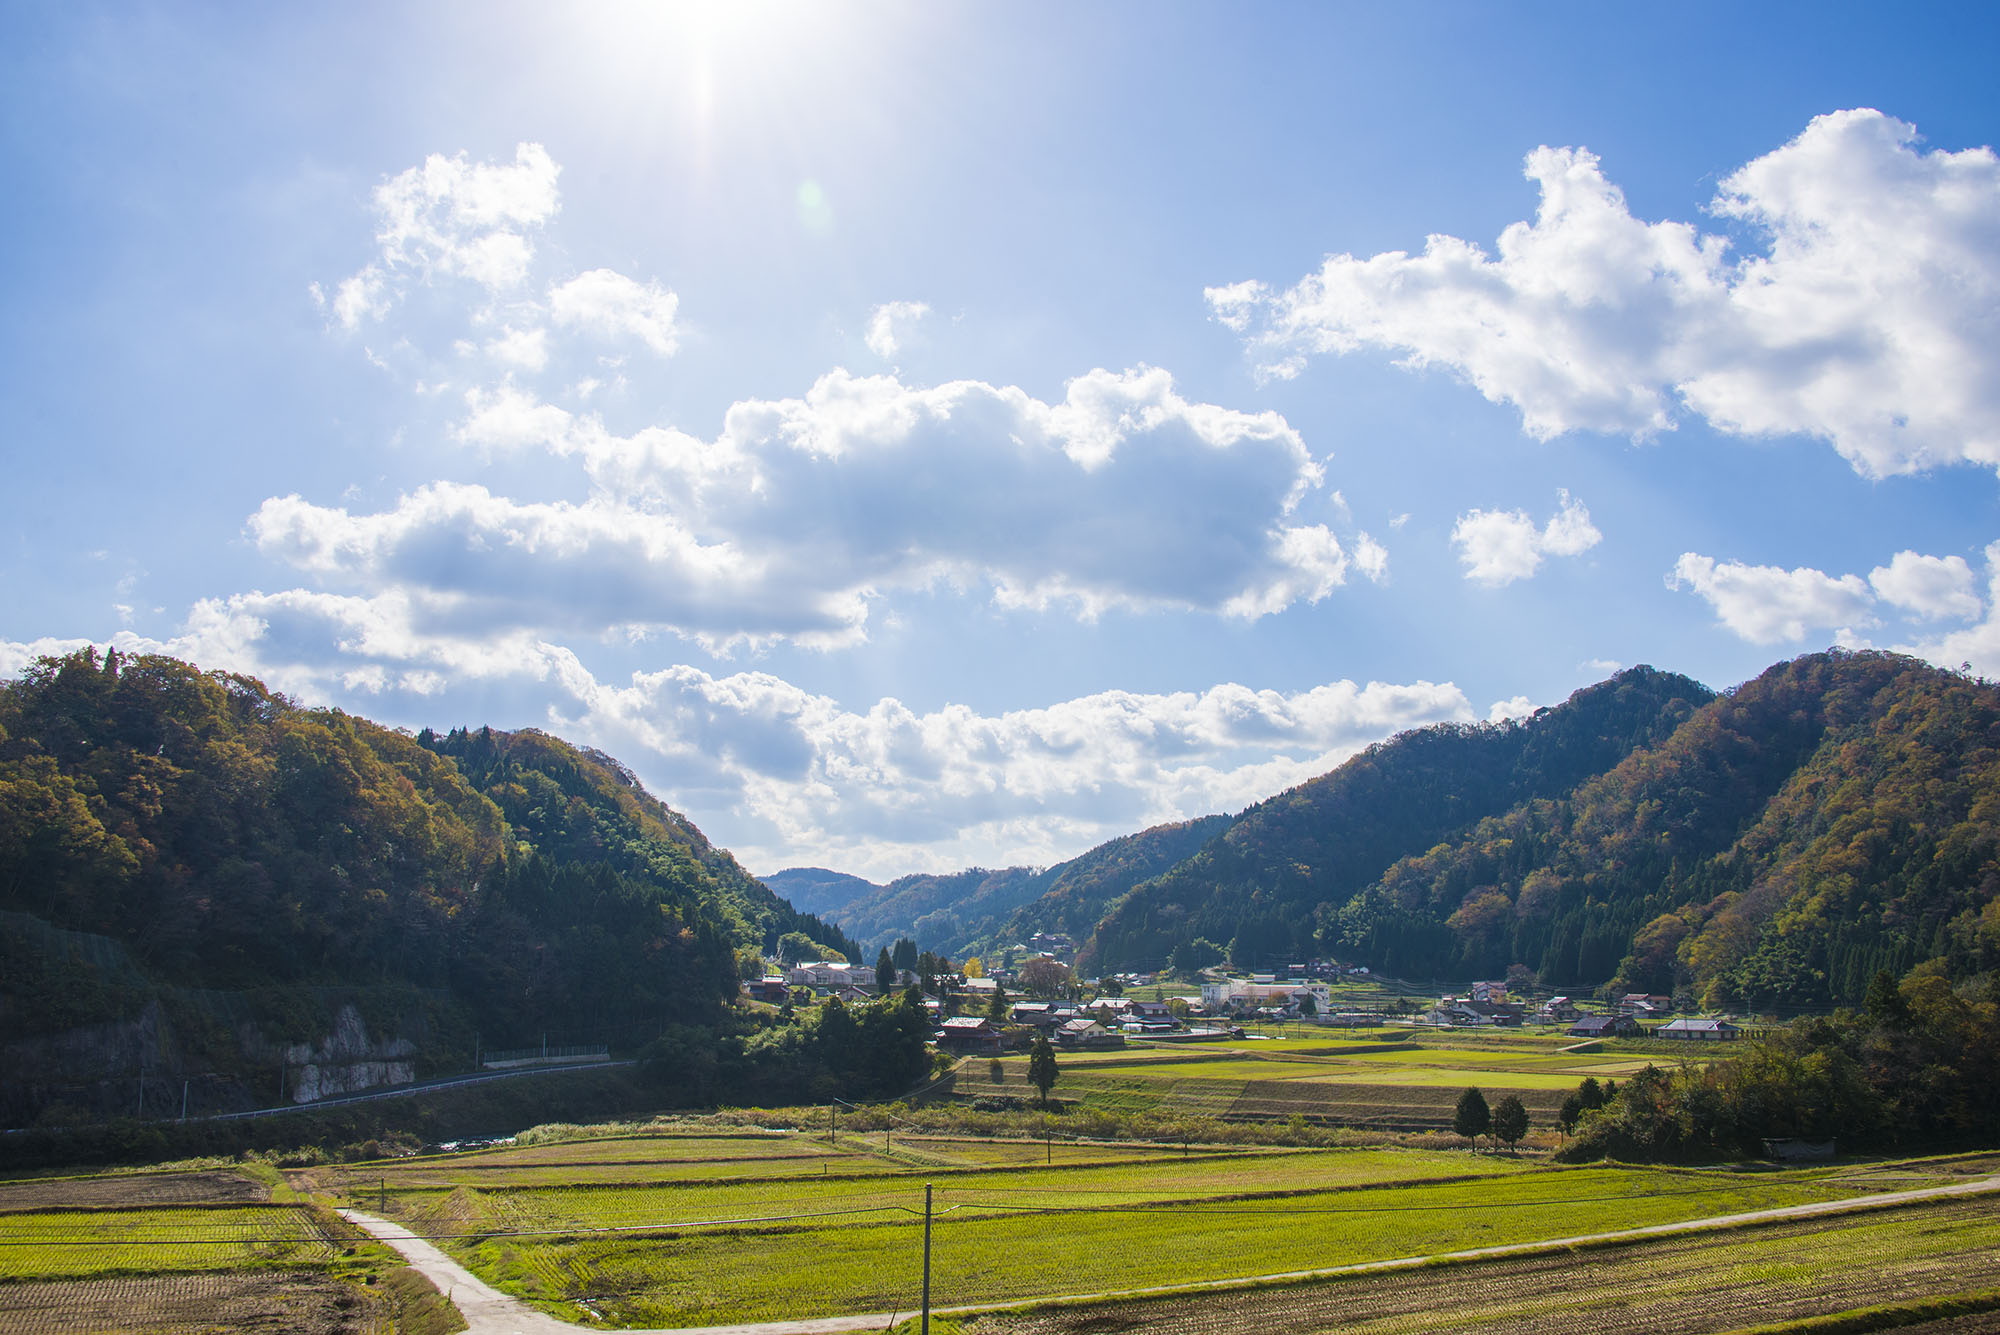 日本の風景写真7 田舎風景 14年11月撮影 フリー写真素材 カフィネット